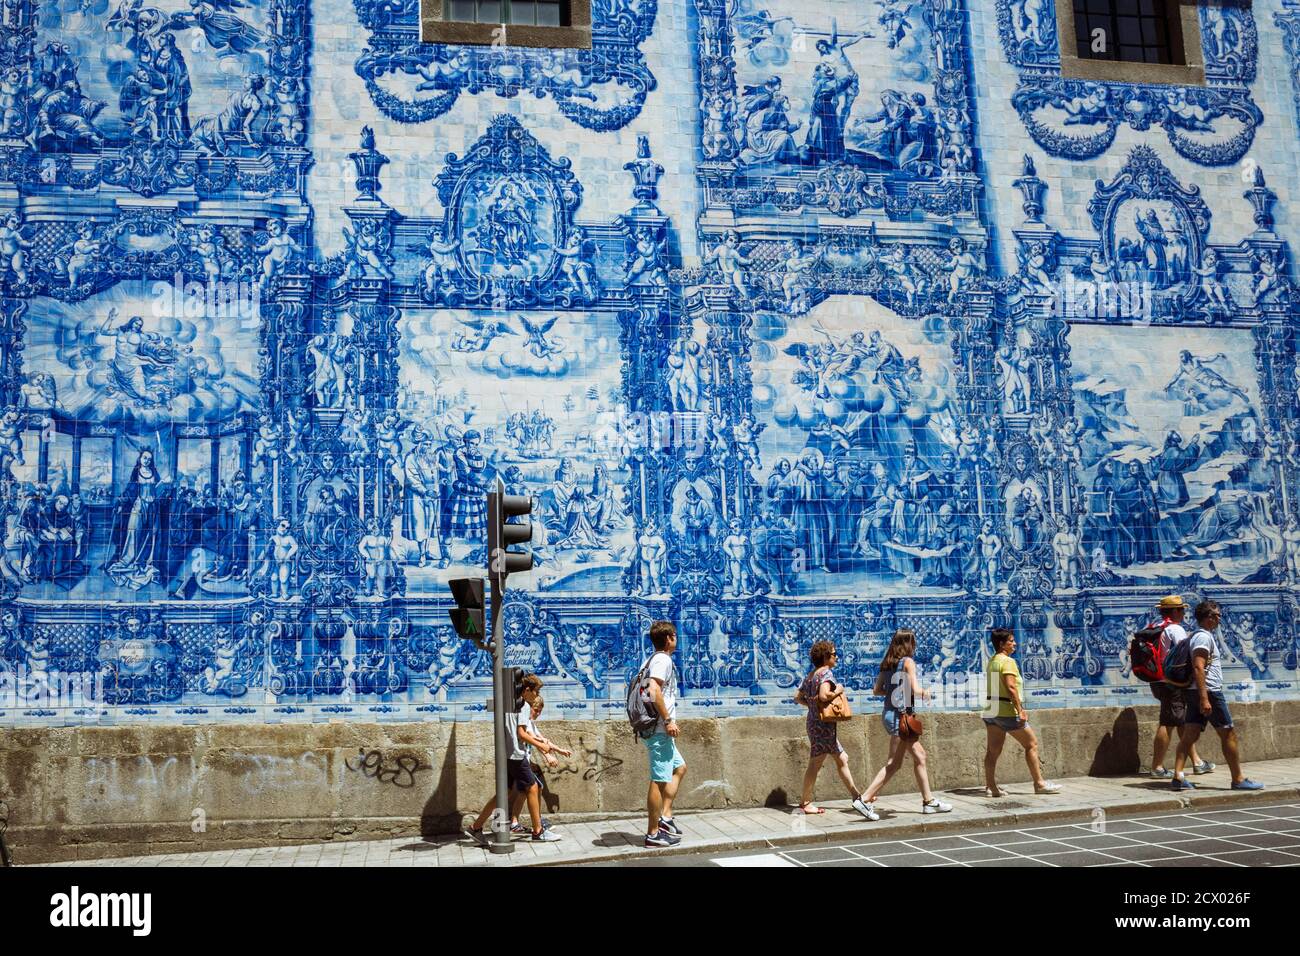 Porto, Portugal : les gens se promeunent devant le mur bleu azulejo d'Eduardo Leite sur les murs de la chapelle Capela das Almas. Banque D'Images